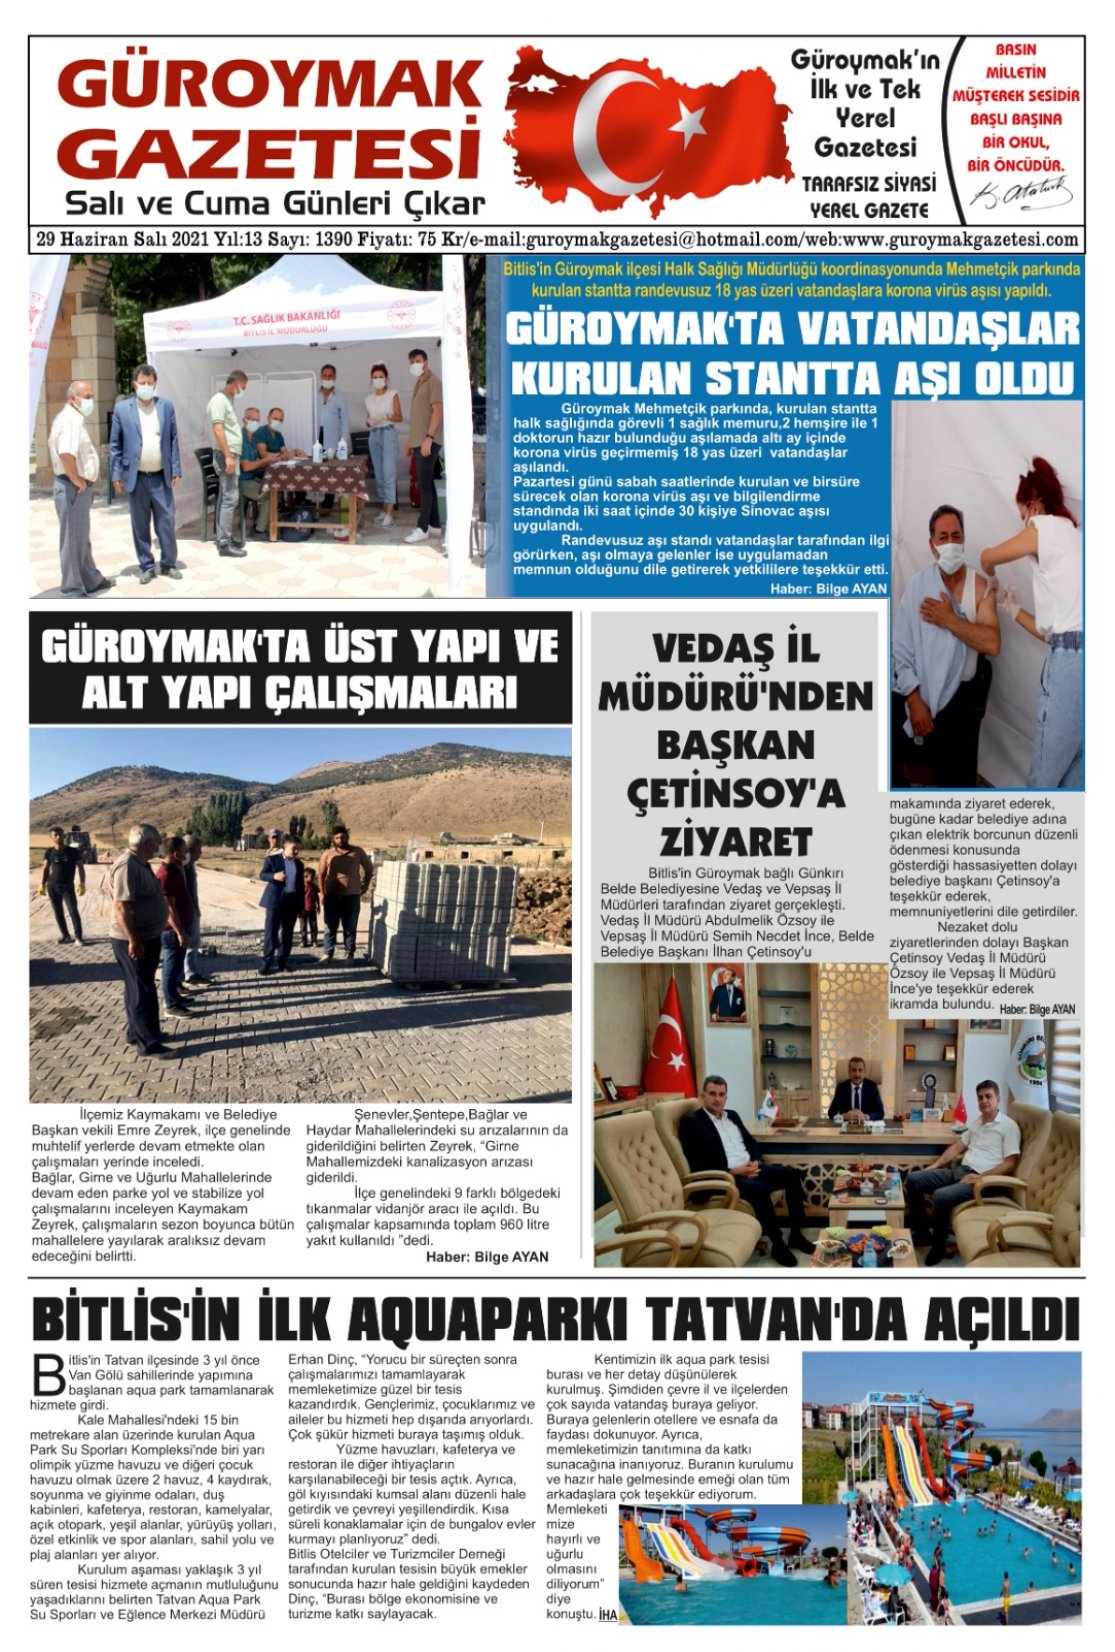 Güroymak Gazetesi WhatsApp Image 2021-06-29 at 09.14.01.jpeg Sayılı Gazete Küpürü